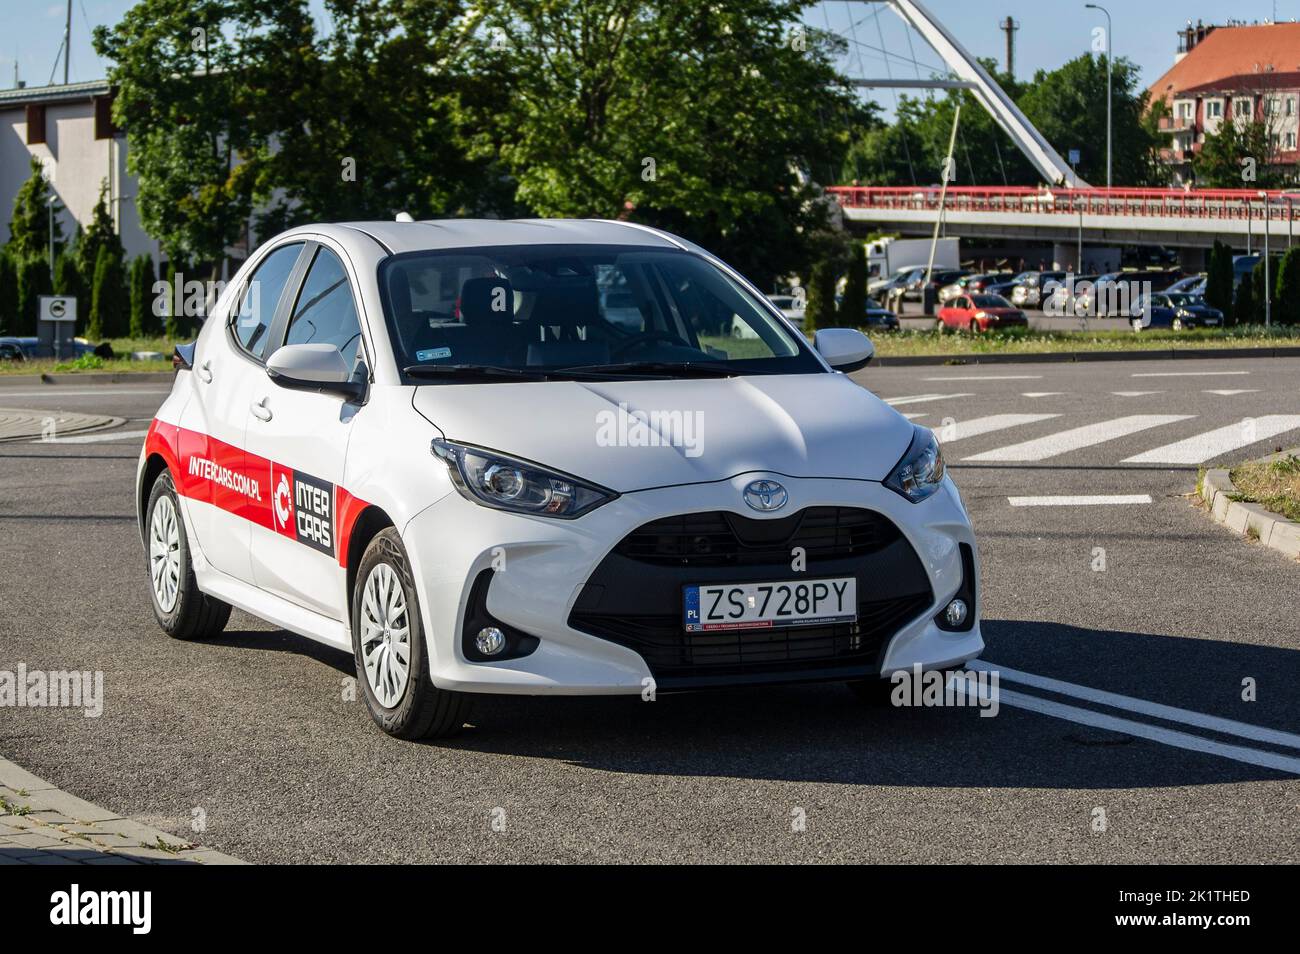 KOLOBRZEG, POLEN - 6. AUGUST 2022: Toyota Yaris Fahrzeug von Inter Cars Car Garage Service Unternehmen Stockfoto